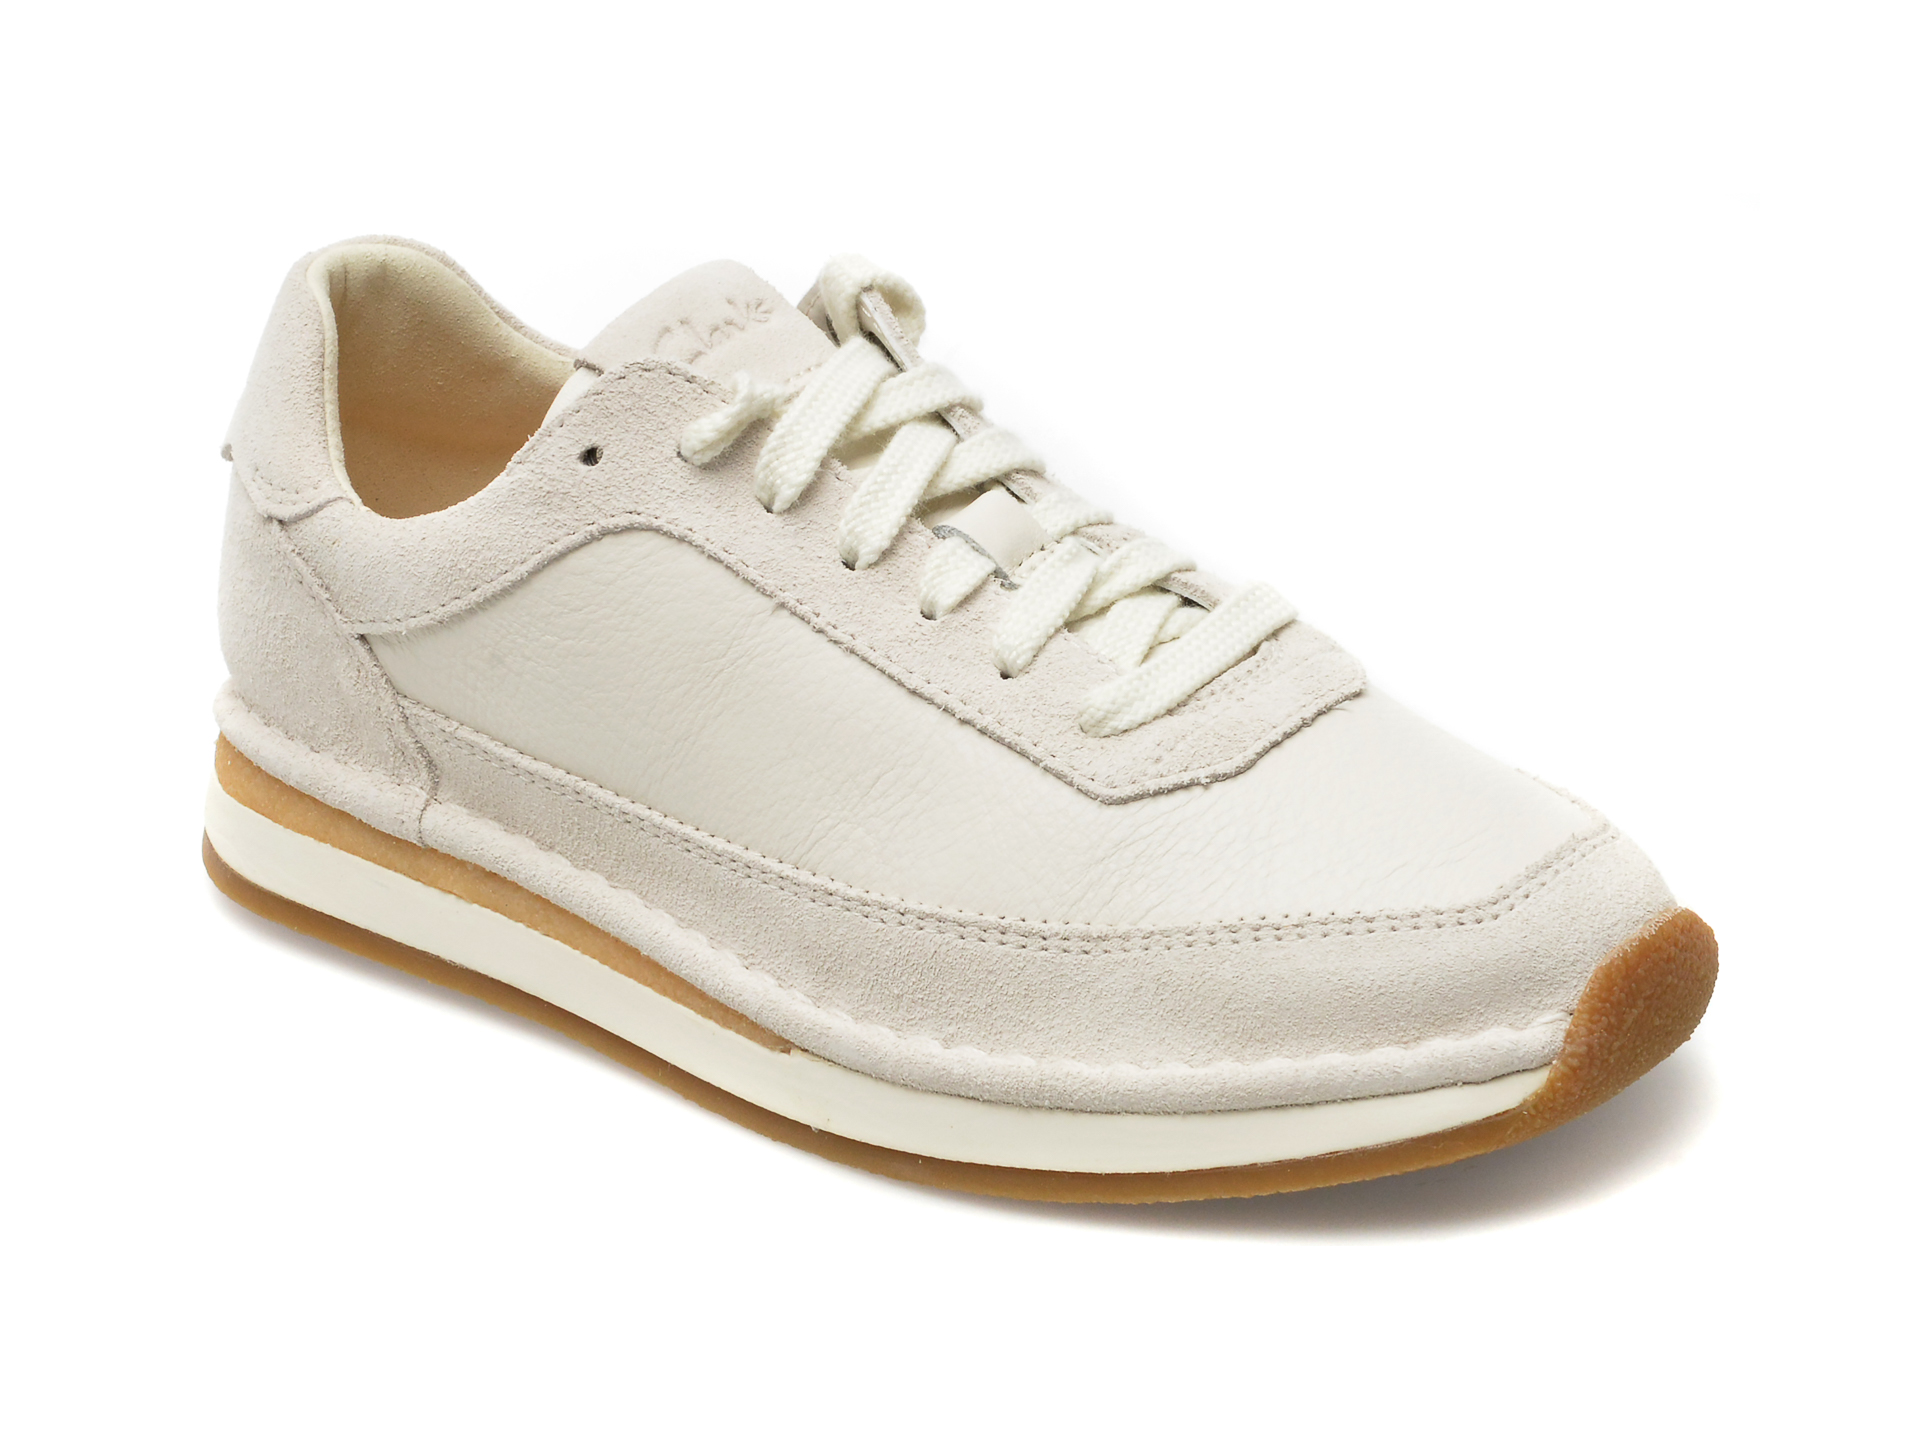 Pantofi CLARKS albi, CRAFTRUN LACE 13-I, din piele intoarsa Femei 2023-05-28